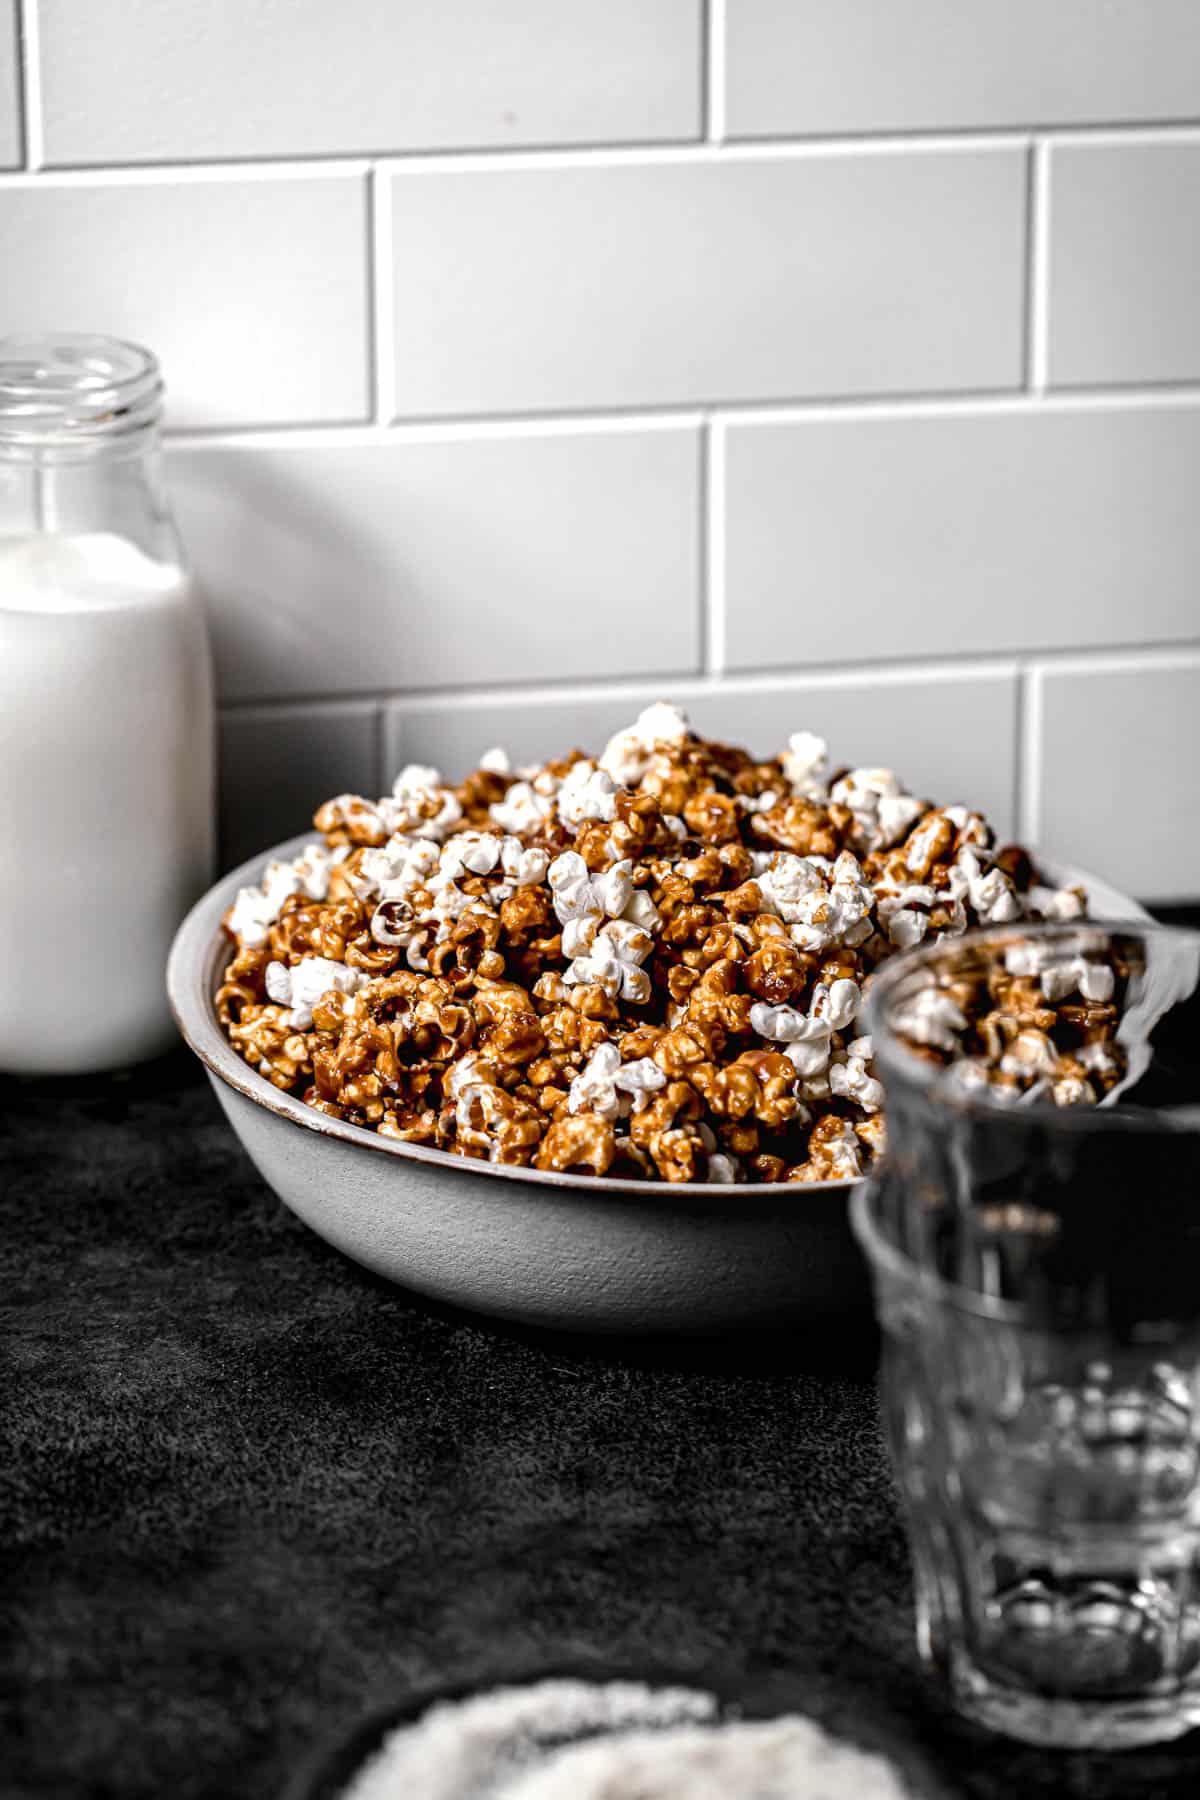 homemade caramel popcorn in large bowl next to jug of milk.